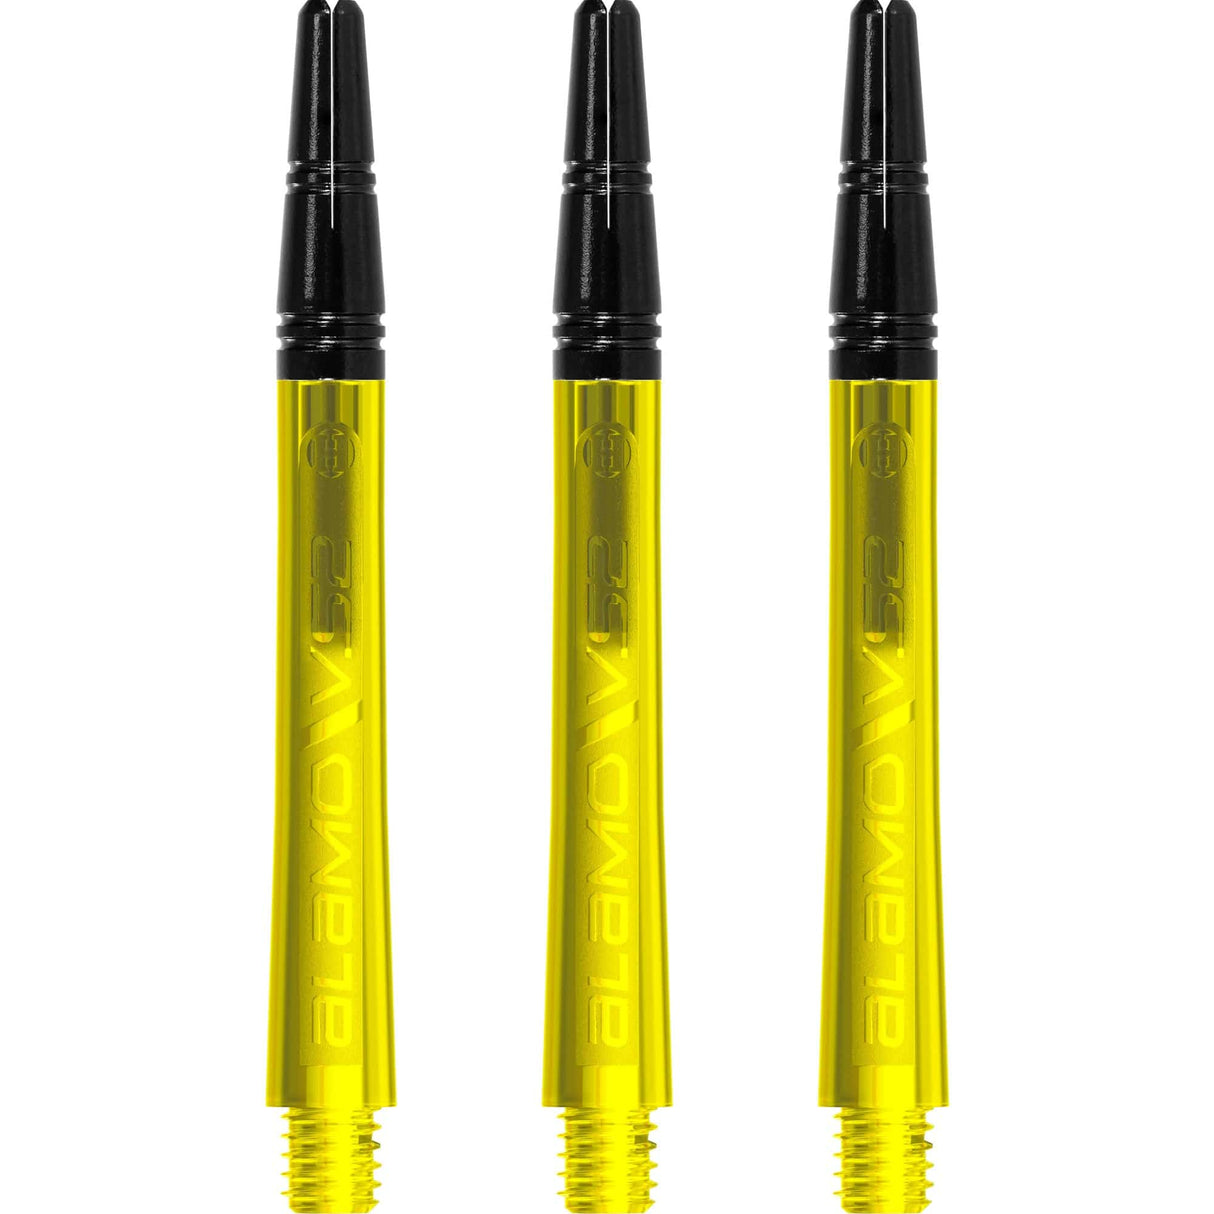 Harrows Alamo VS2 Dart Shafts - Polycarbonate - Black Aluminium Top - Yellow Medium